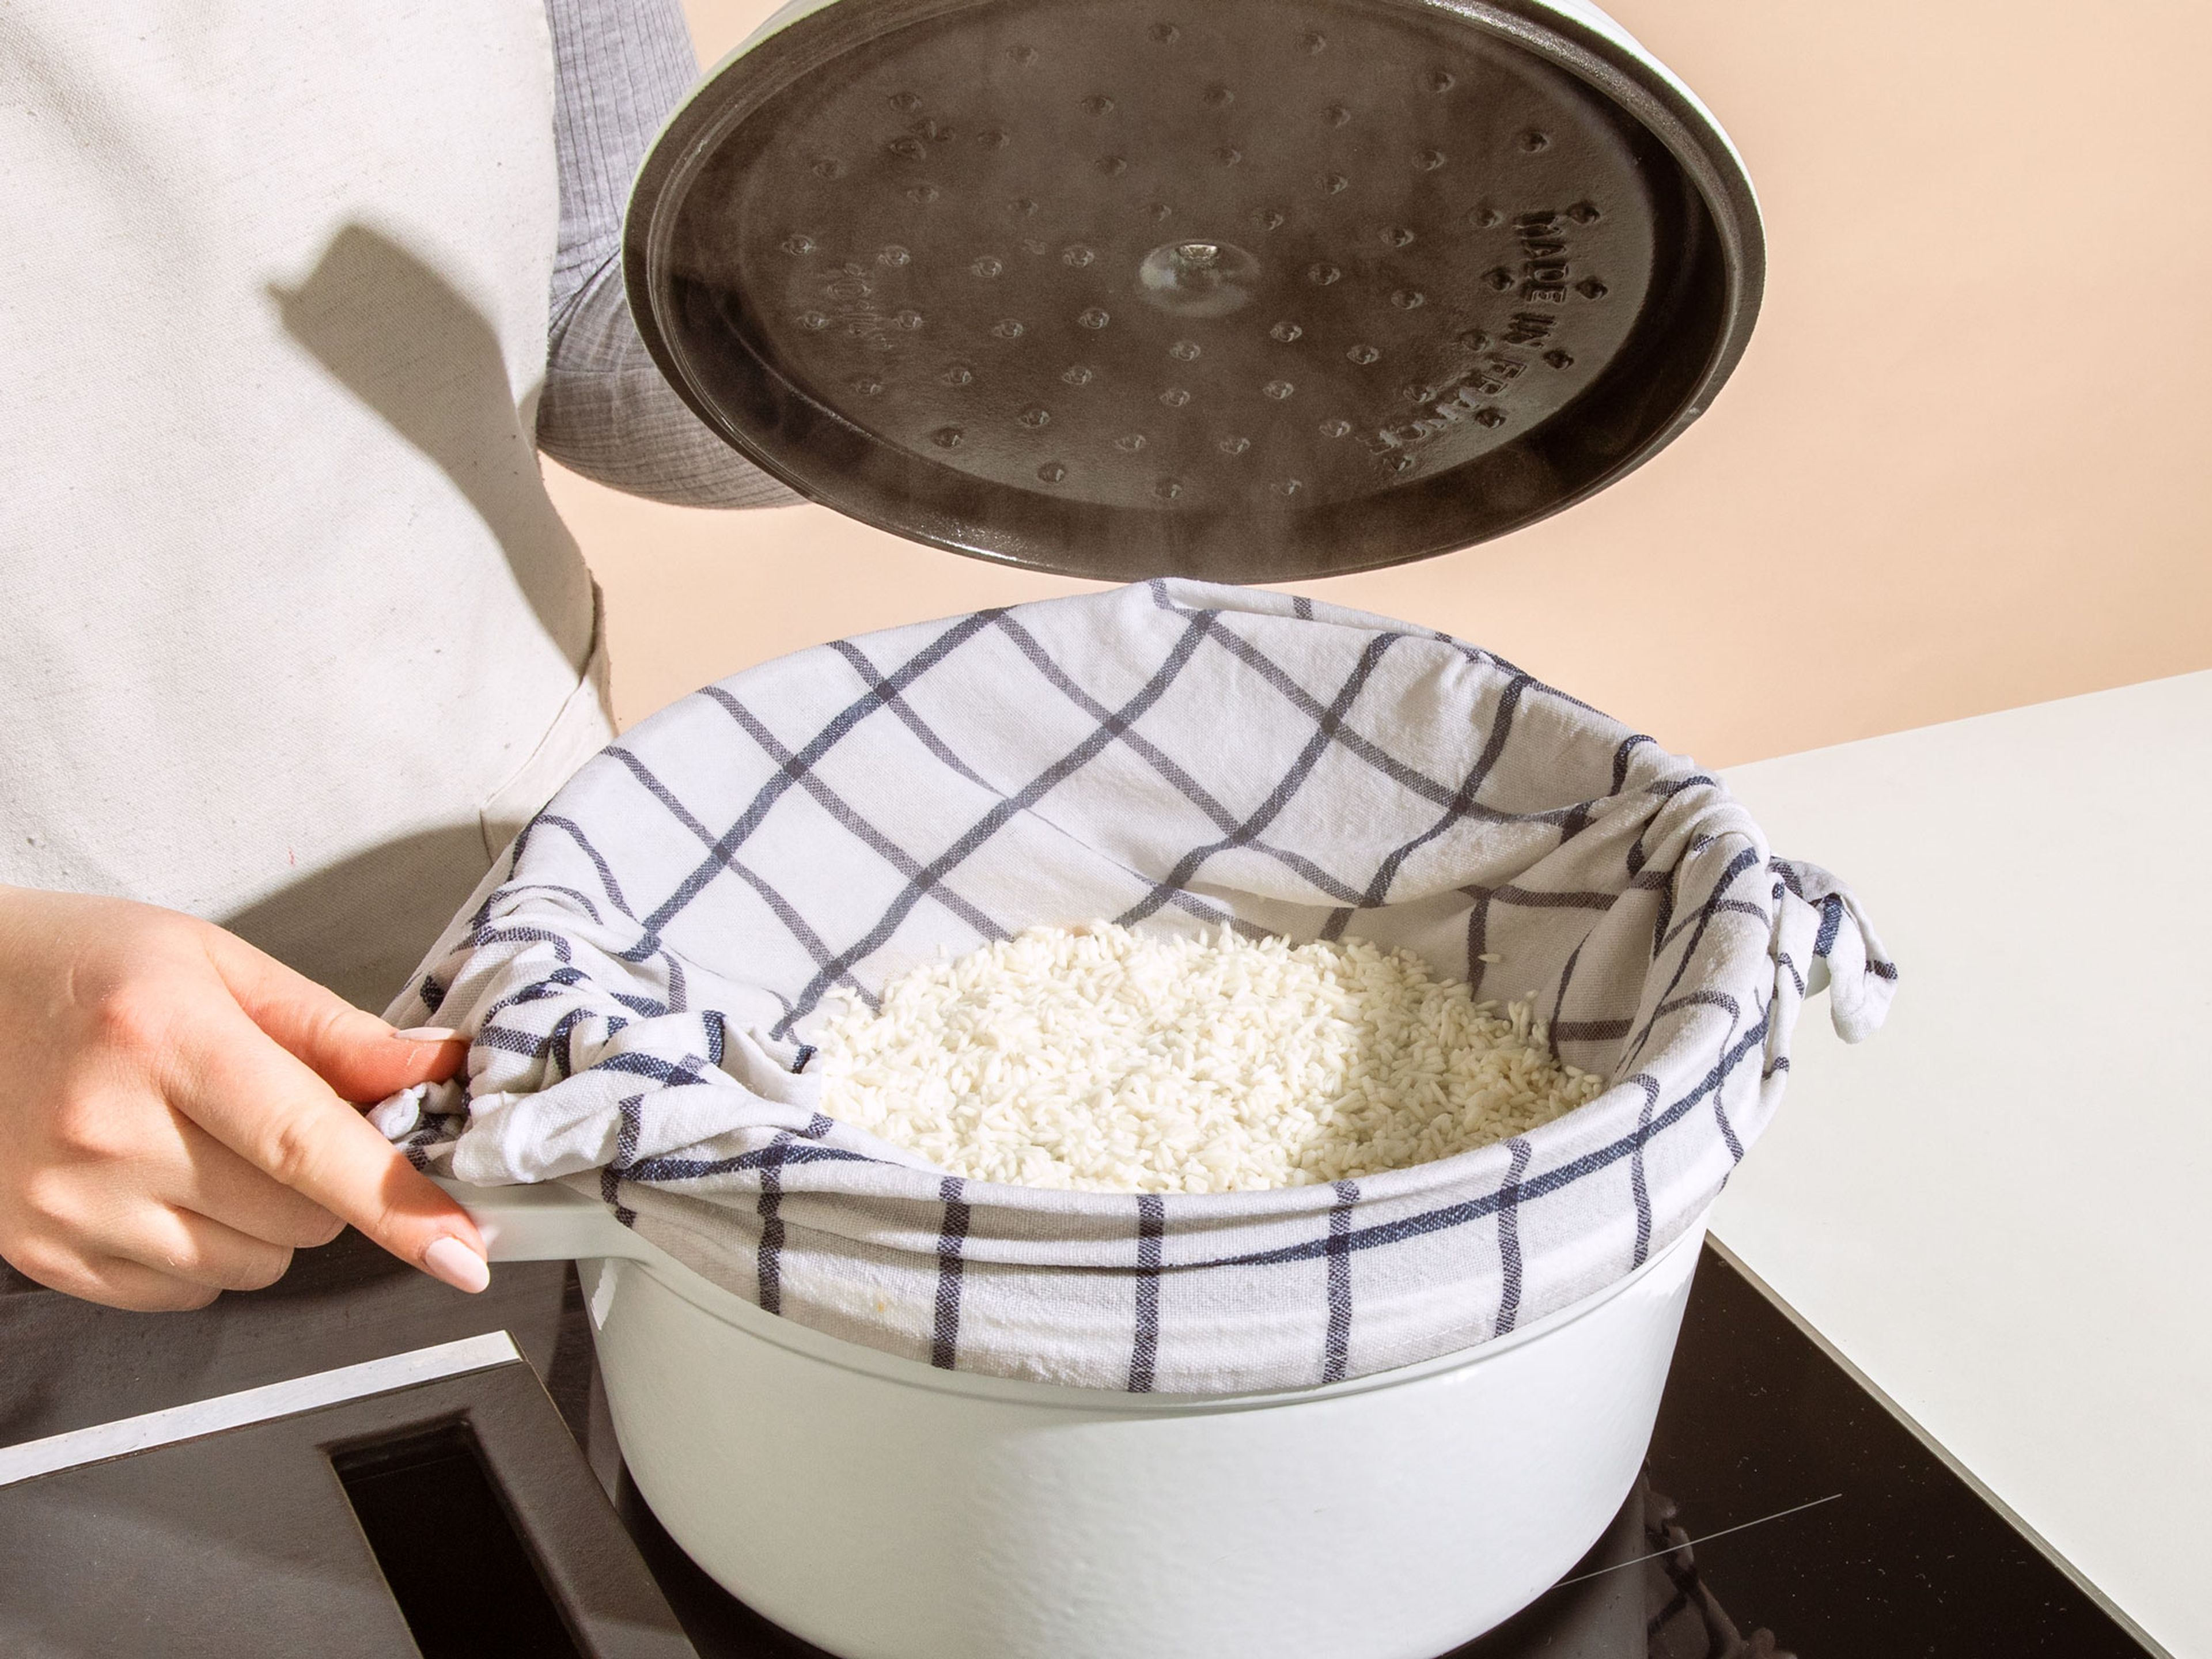 Jetzt den Reis in ein feines Sieb geben und nochmals mit Wasser abspülen. Einen großen Topf mit Wasser zum Kochen bringen und dann auf mittlere Hitze einstellen, sodass das Wasser leicht siedet. Das Sieb über den Topf hängen, wobei es nicht das Wasser berühren darf. Mit einem Deckel abdecken und den Reis für 30 Min. dämpfen.